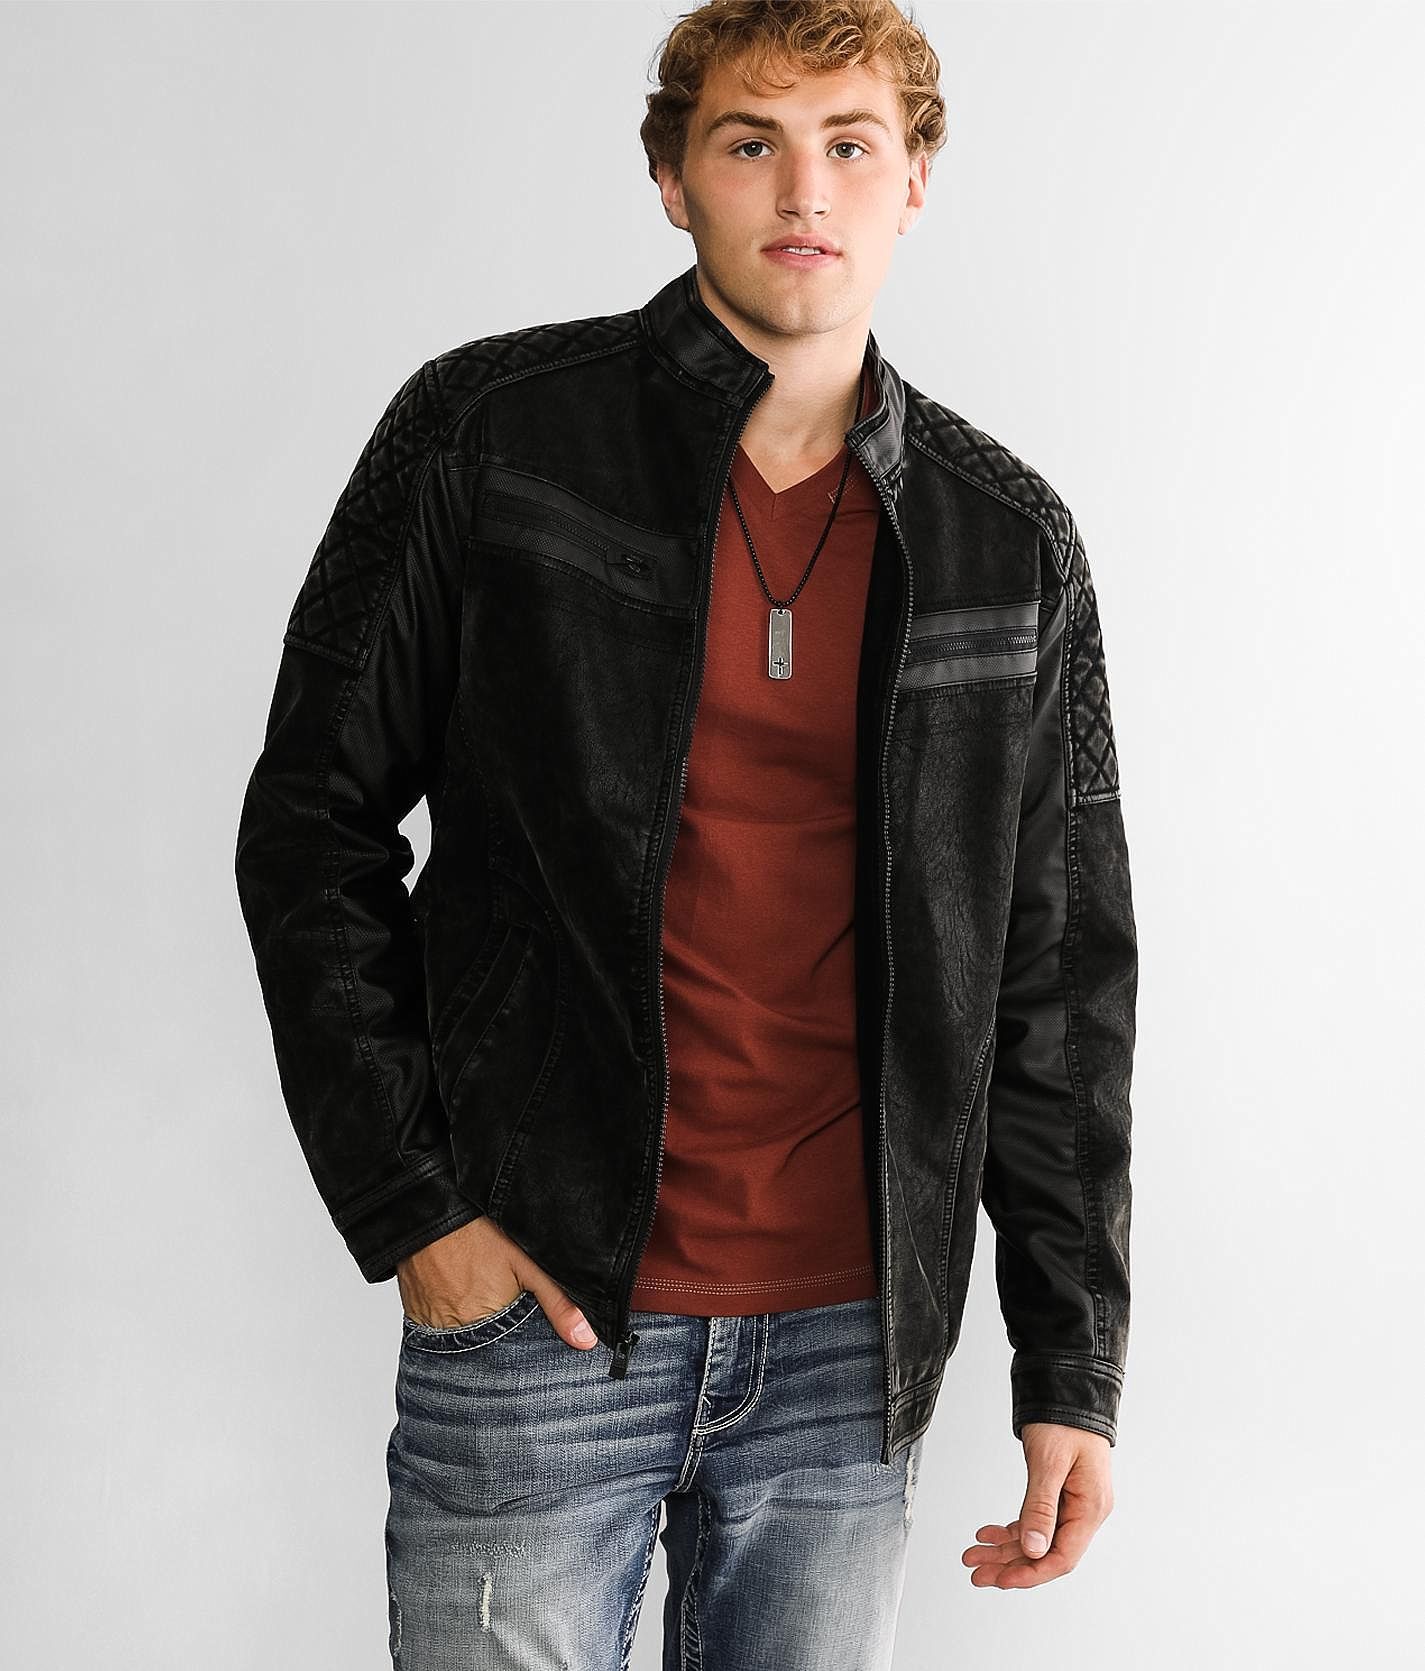 Buckle Black Washed Faux Leather Jacket  - Black - male - Size: Medium